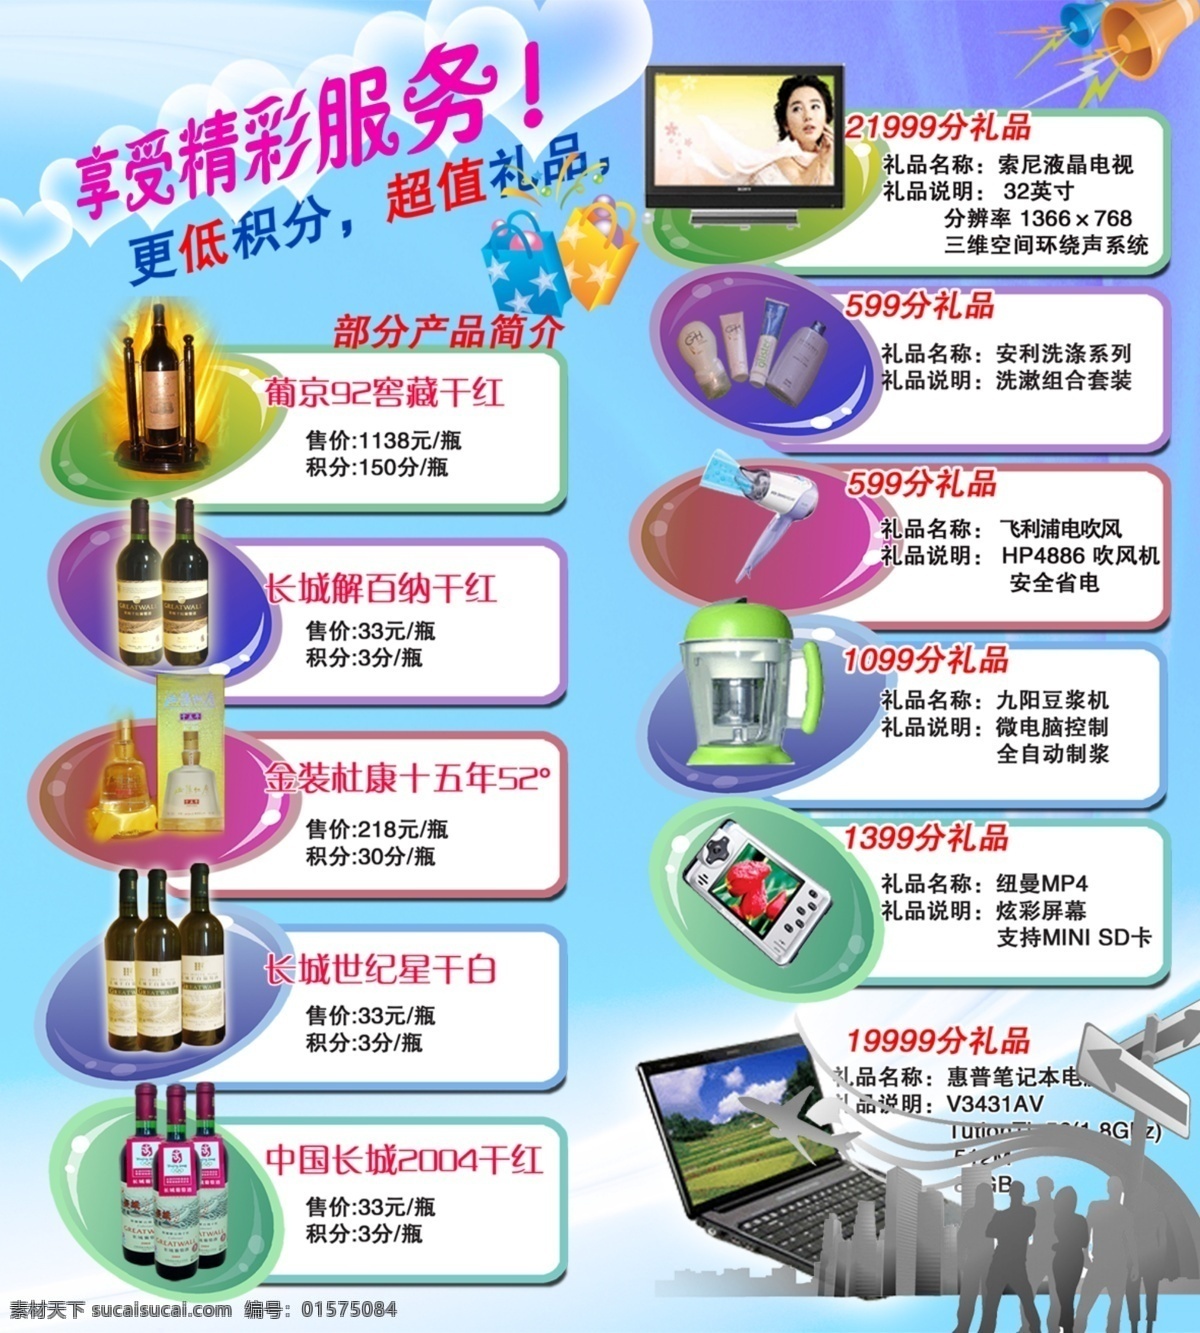 酒广告 酒海报 酒传单 酒彩页 酒dm 广告设计模板 源文件 酒类 白色